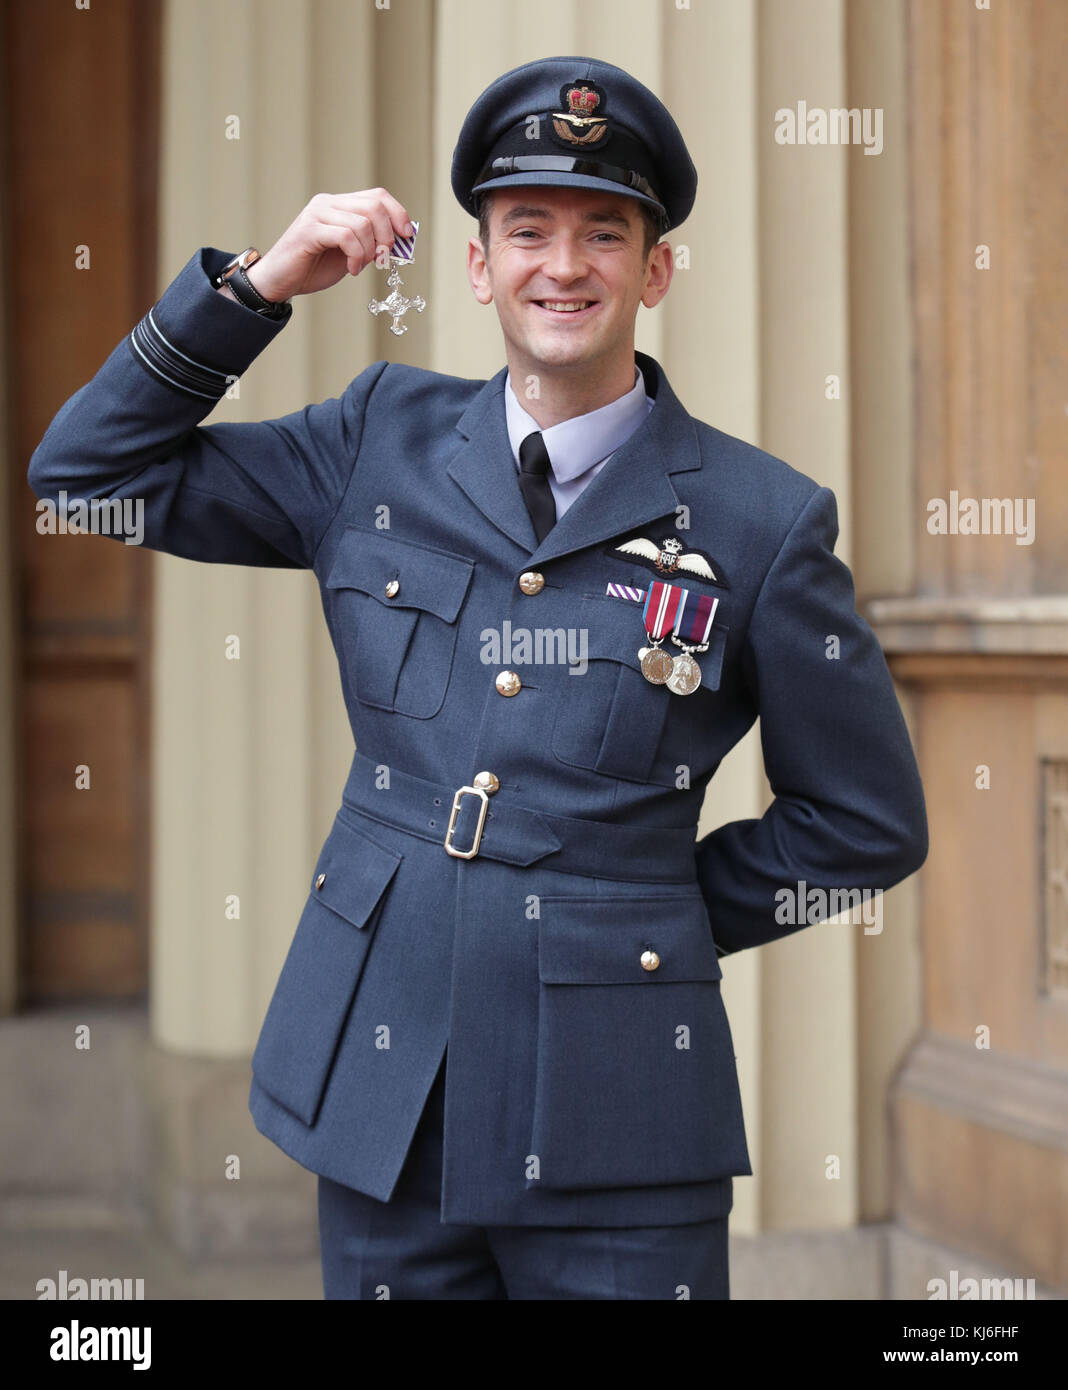 Roger Cruickshank, chef de l'escadron, après avoir reçu une Croix de vol distinguée du duc de Cambridge, au palais de Buckingham, à Londres. Banque D'Images